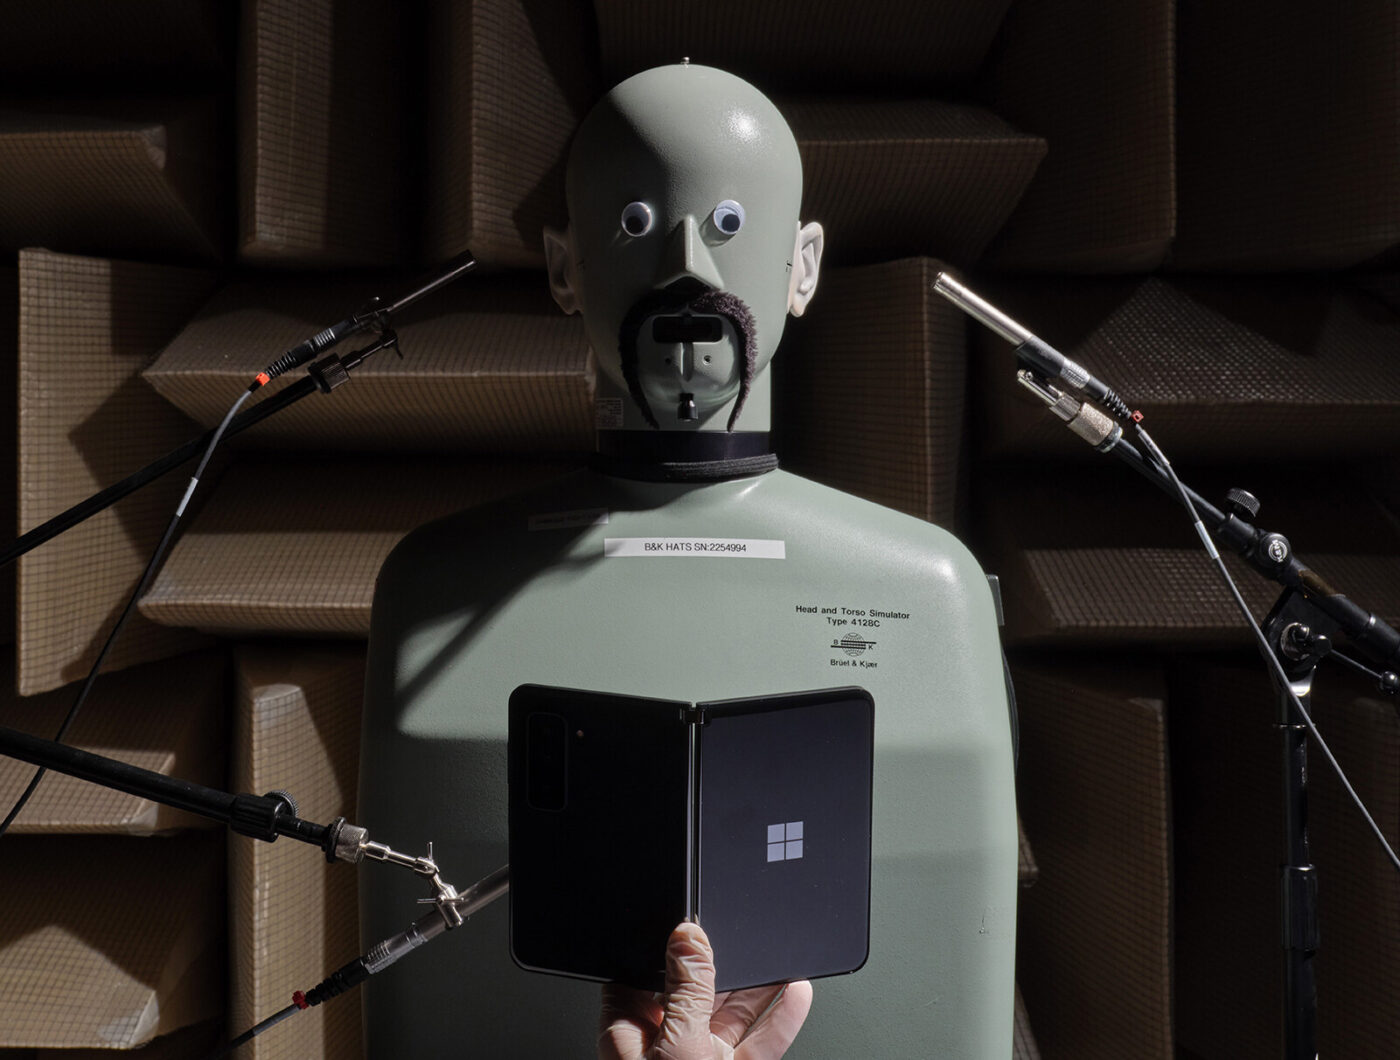 Microsoftov klepetalni robot Bing